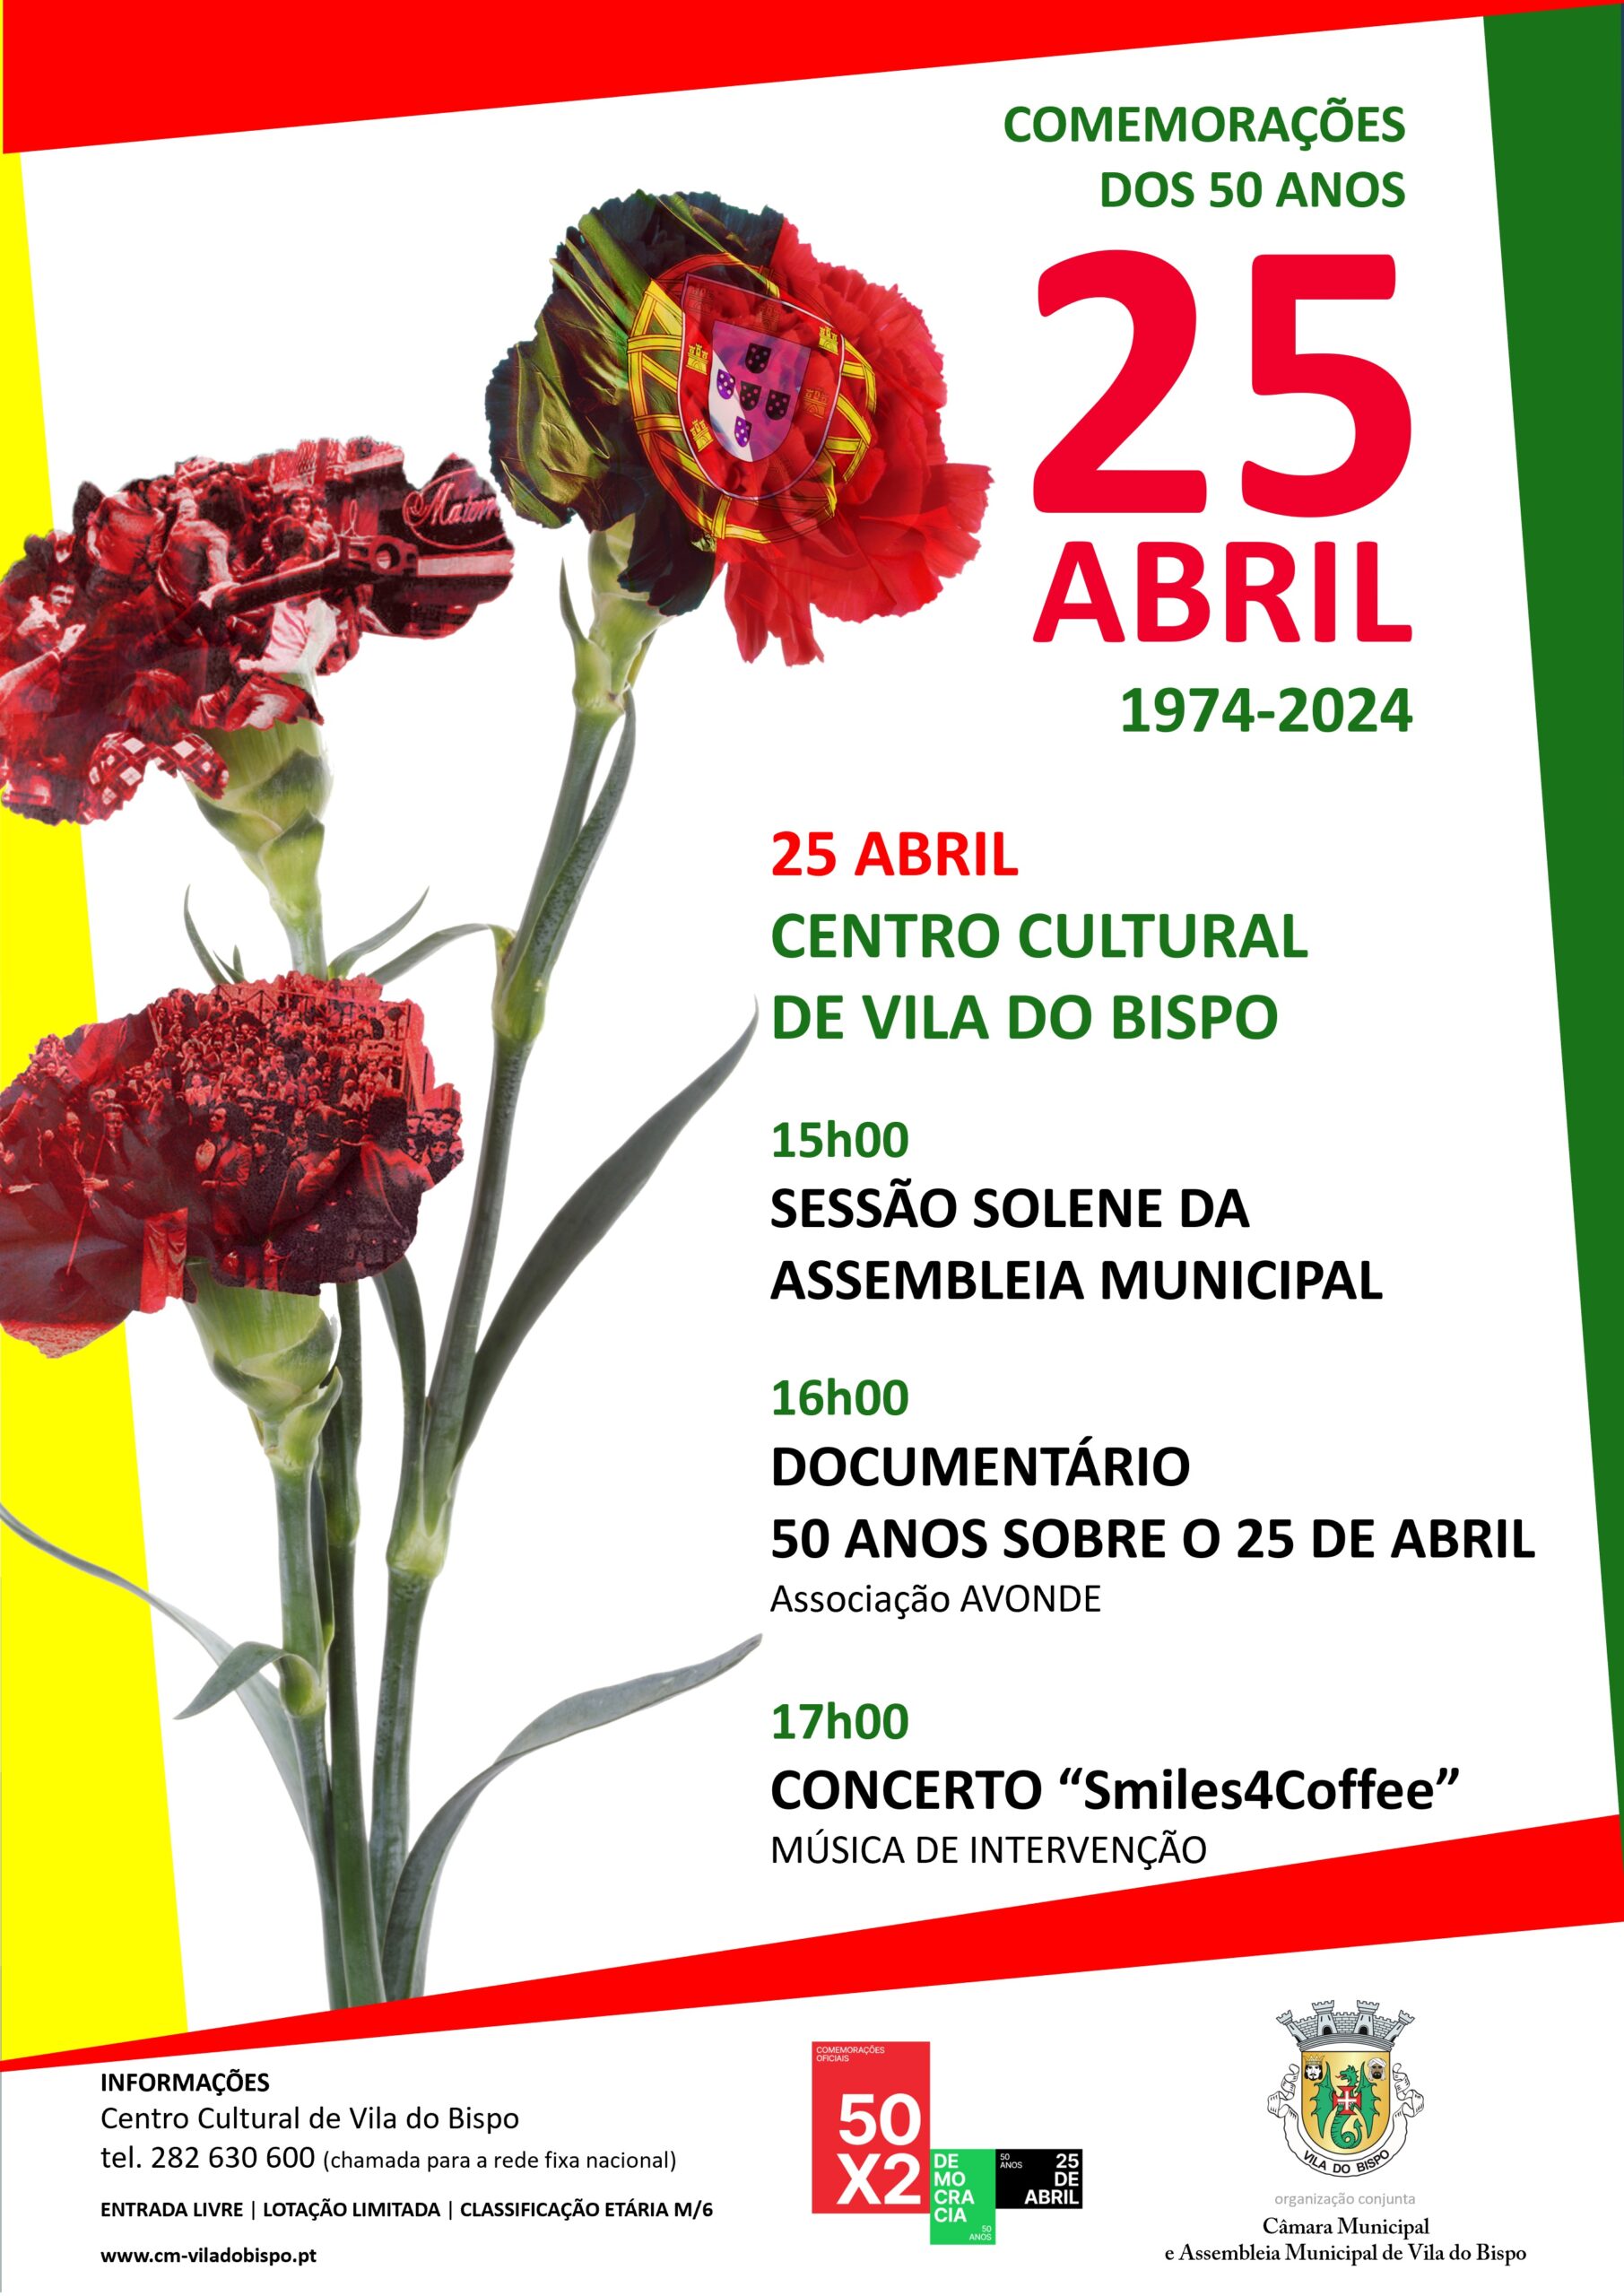 Capa Oficial do Evento Comemorações dos 50 Anos 25 de Abril 1974-2024